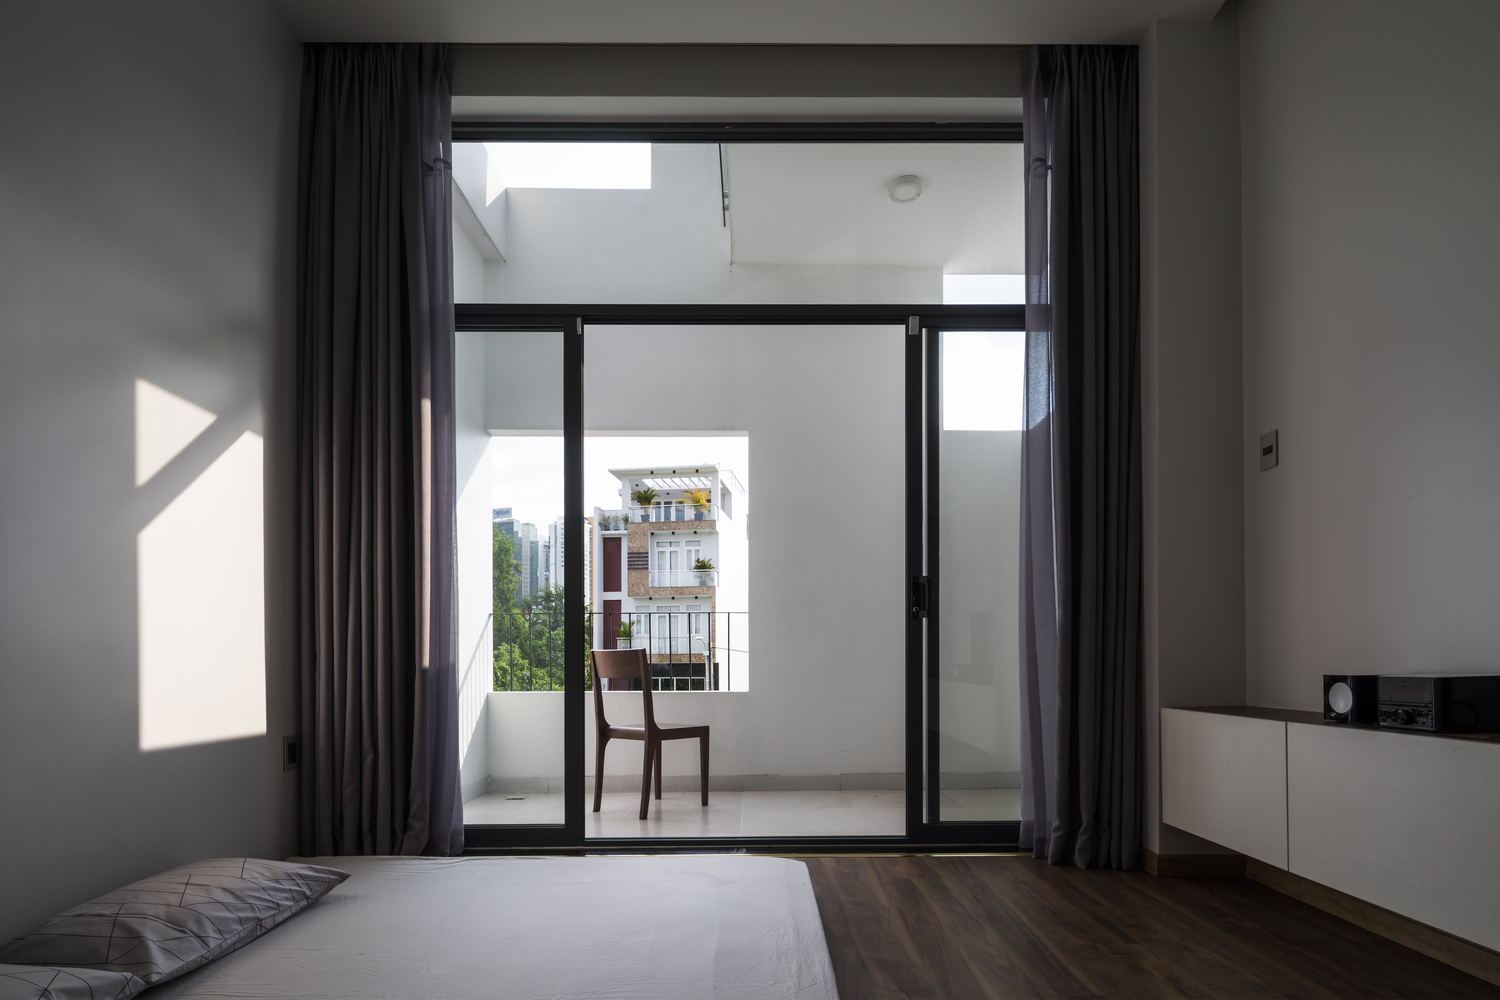 Các phòng ngủ được thiết kế tối giản với cửa kính trượt trong suốt nhìn ra khung cảnh bên ngoài. Rèm che dày dặn cũng được tích hợp để cách âm và tạo sự riêng tư cho gia chủ khi cần.